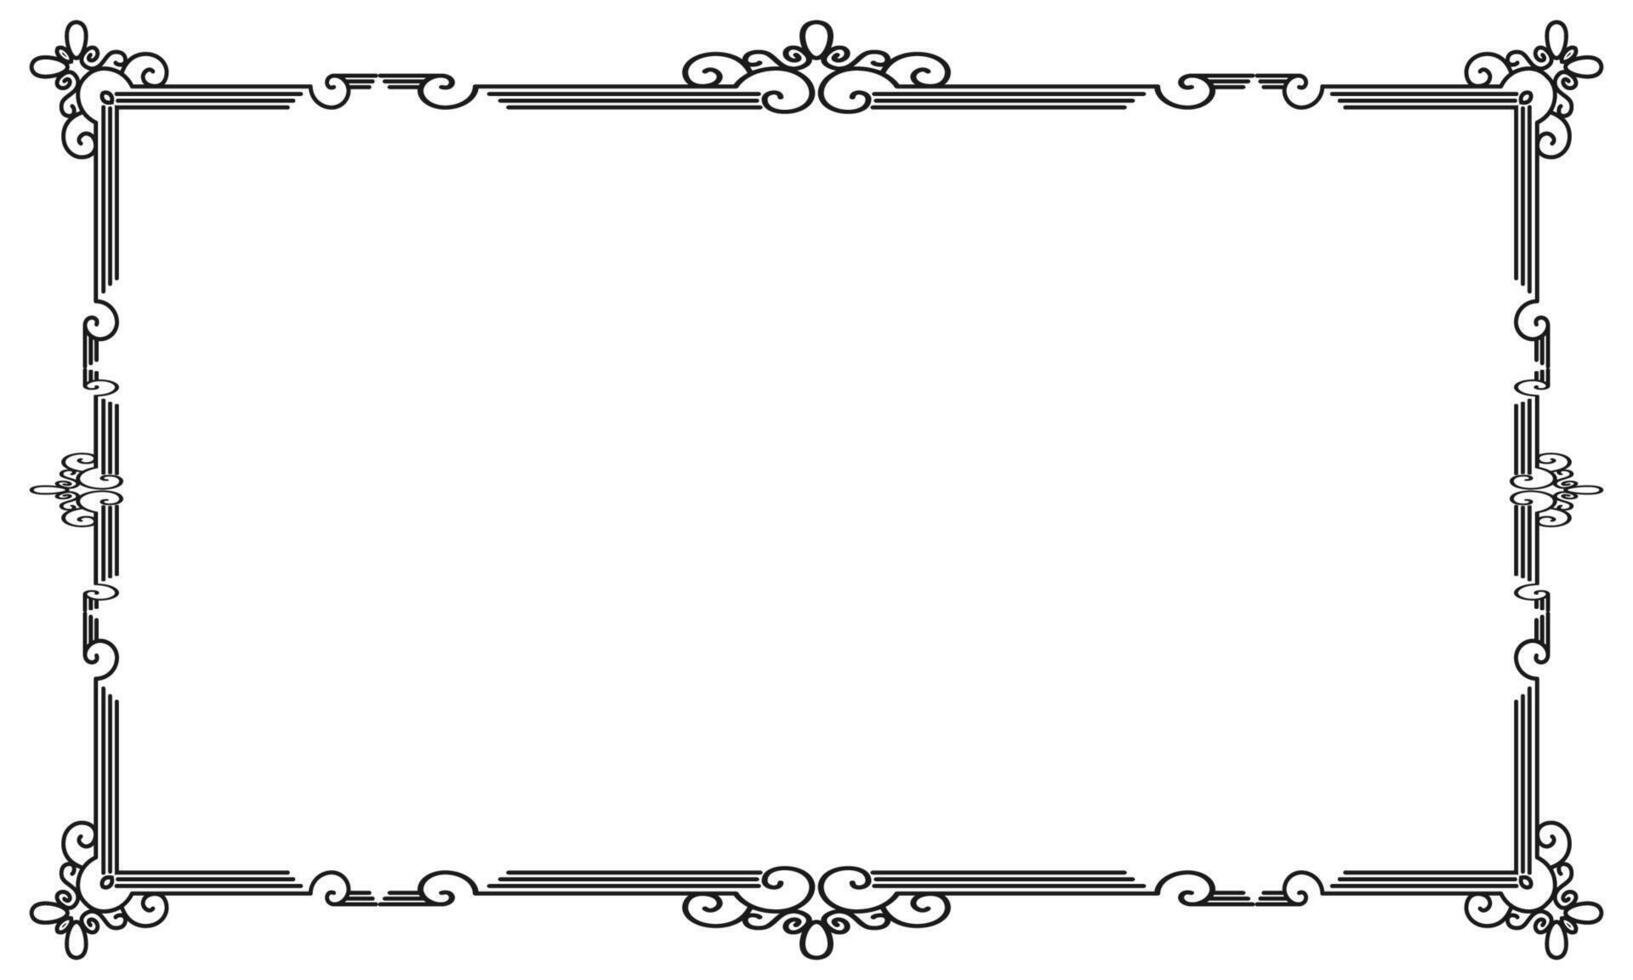 mano dibujado ornamental marco en blanco antecedentes vector